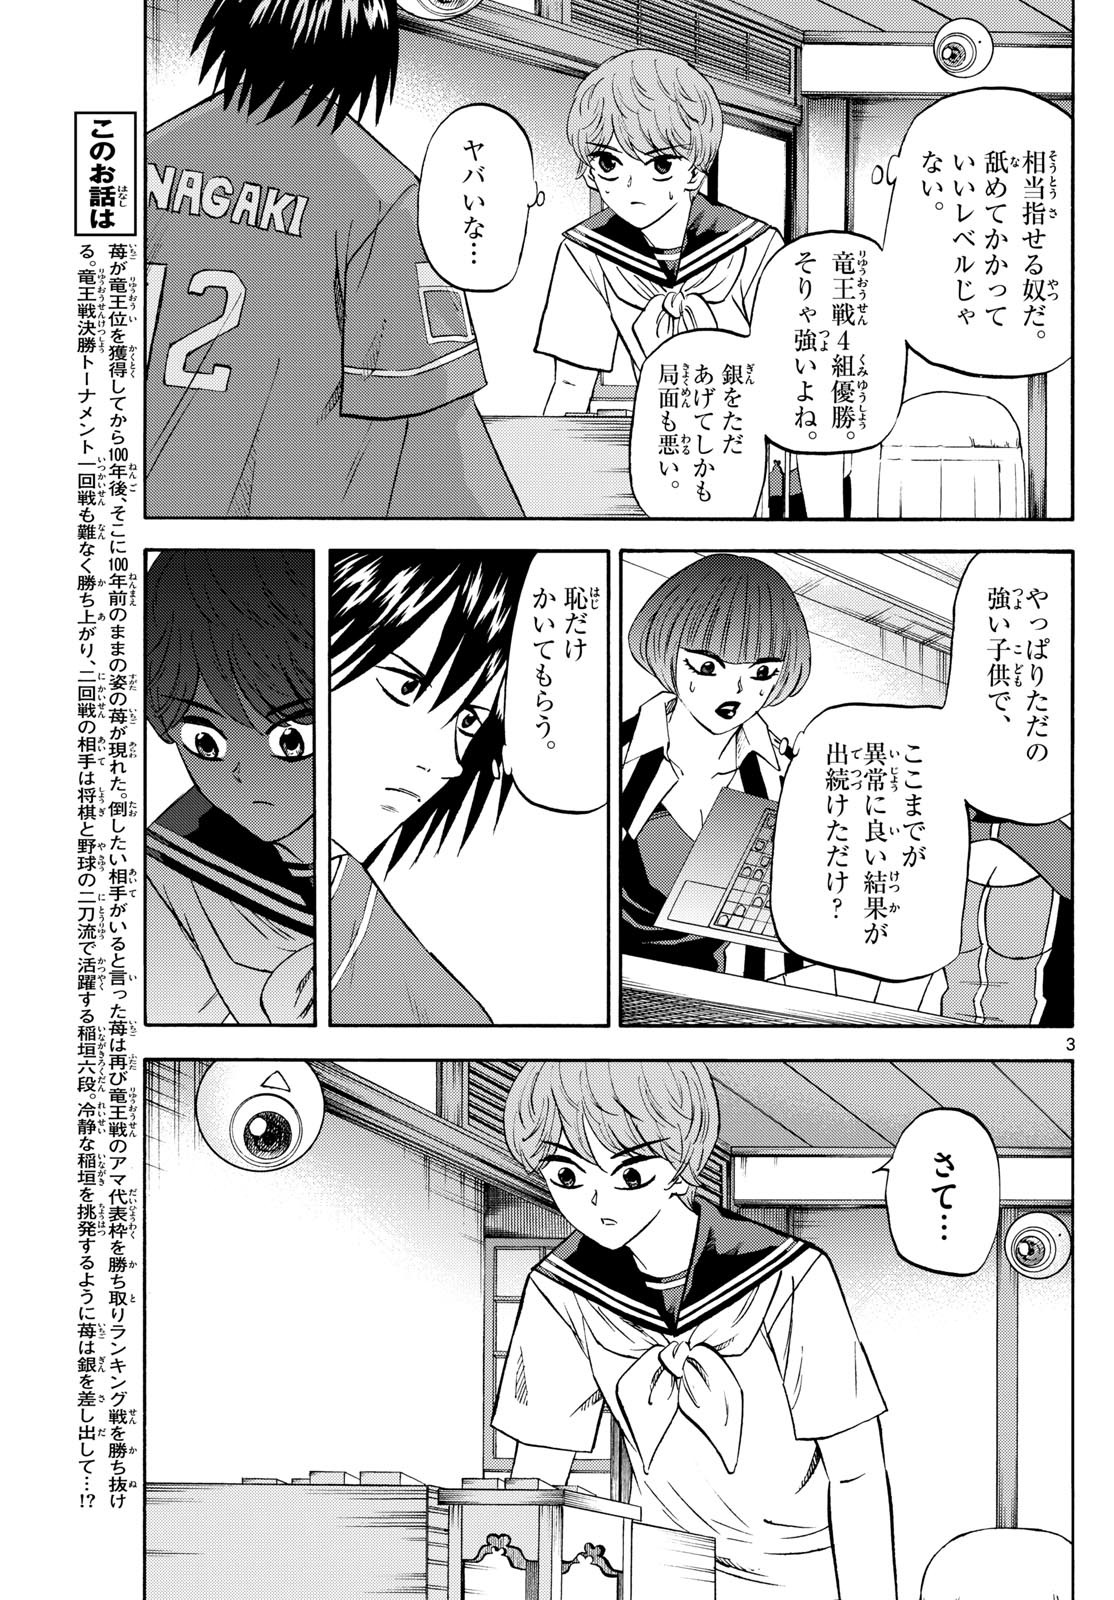 Ryu-to-Ichigo - Chapter 198 - Page 3